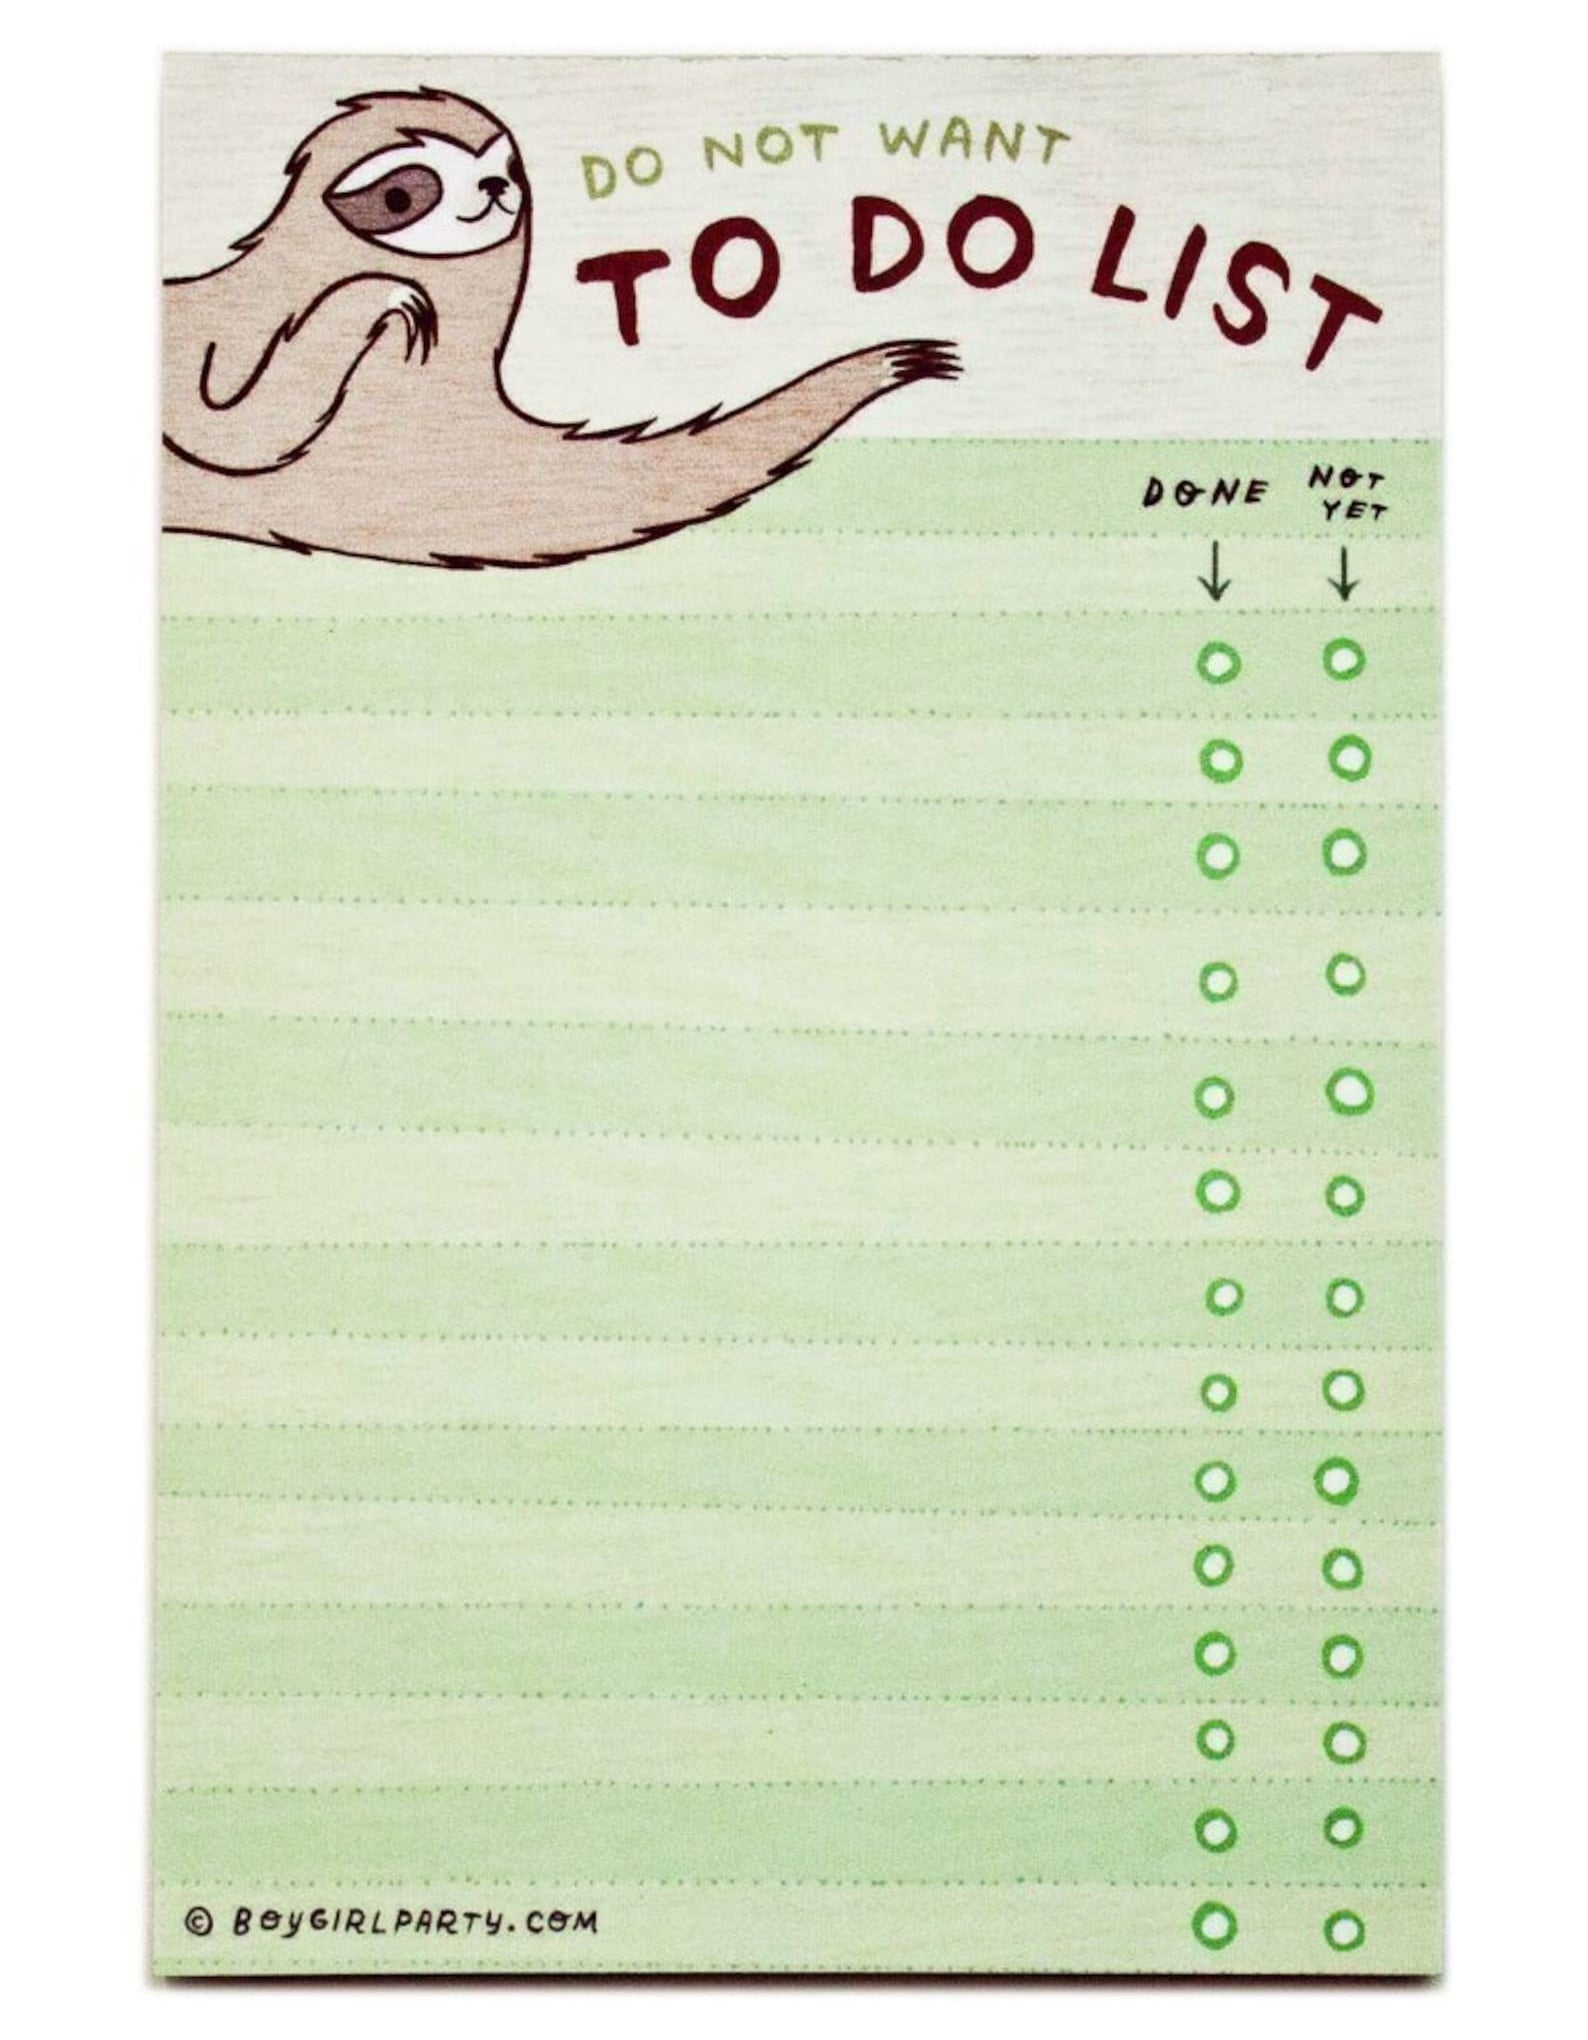 绿色的记事本,说“不想做list",并在左上角一个懒惰的例子”class=